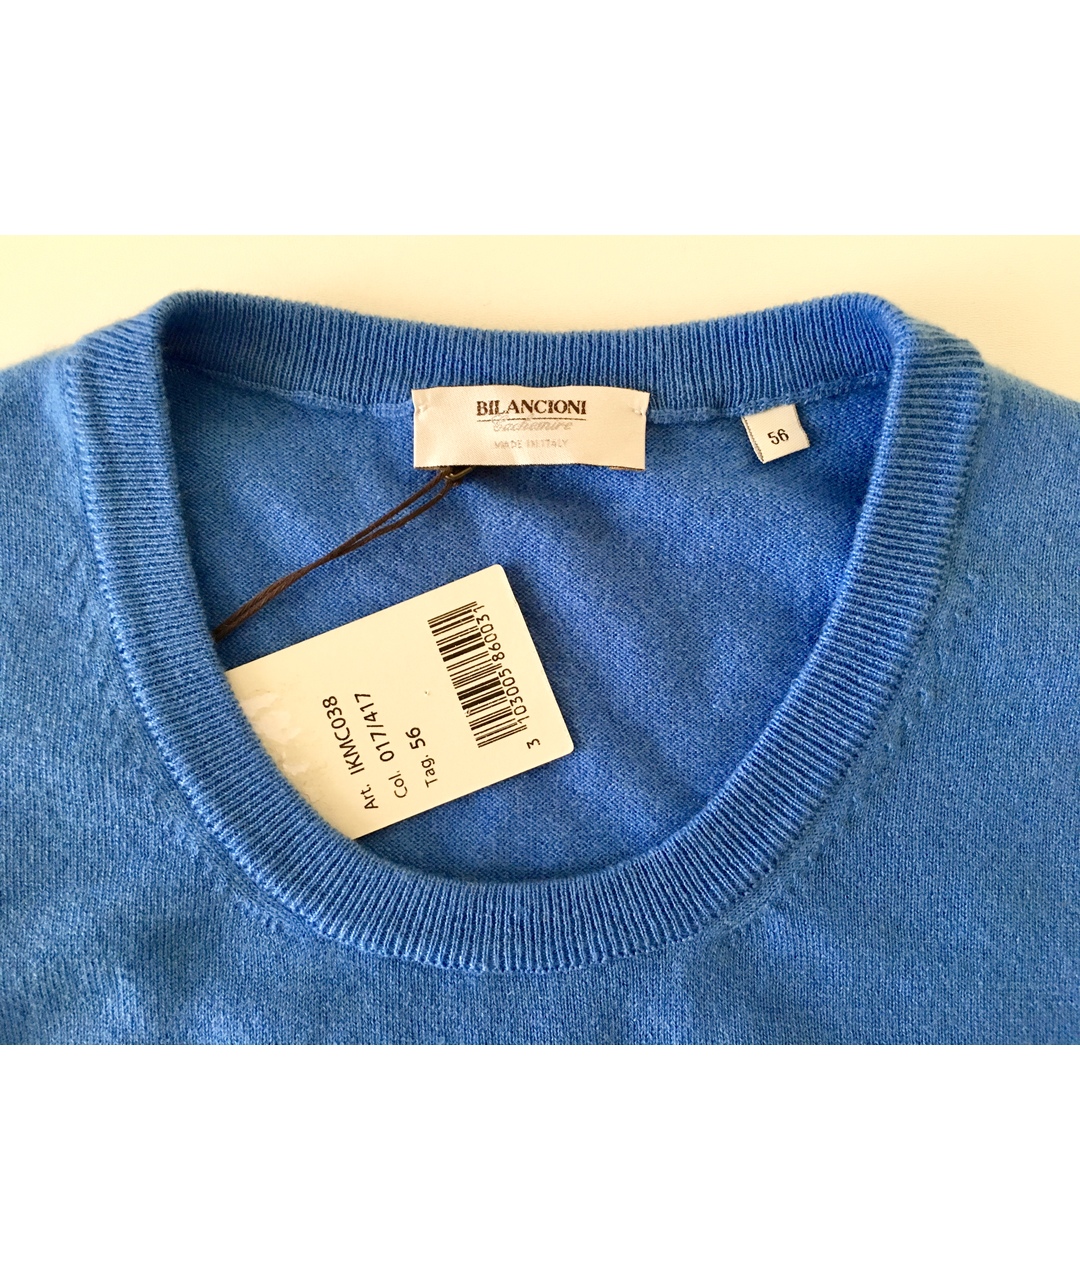 BILANCIONI Синий кашемировый джемпер / свитер, фото 4